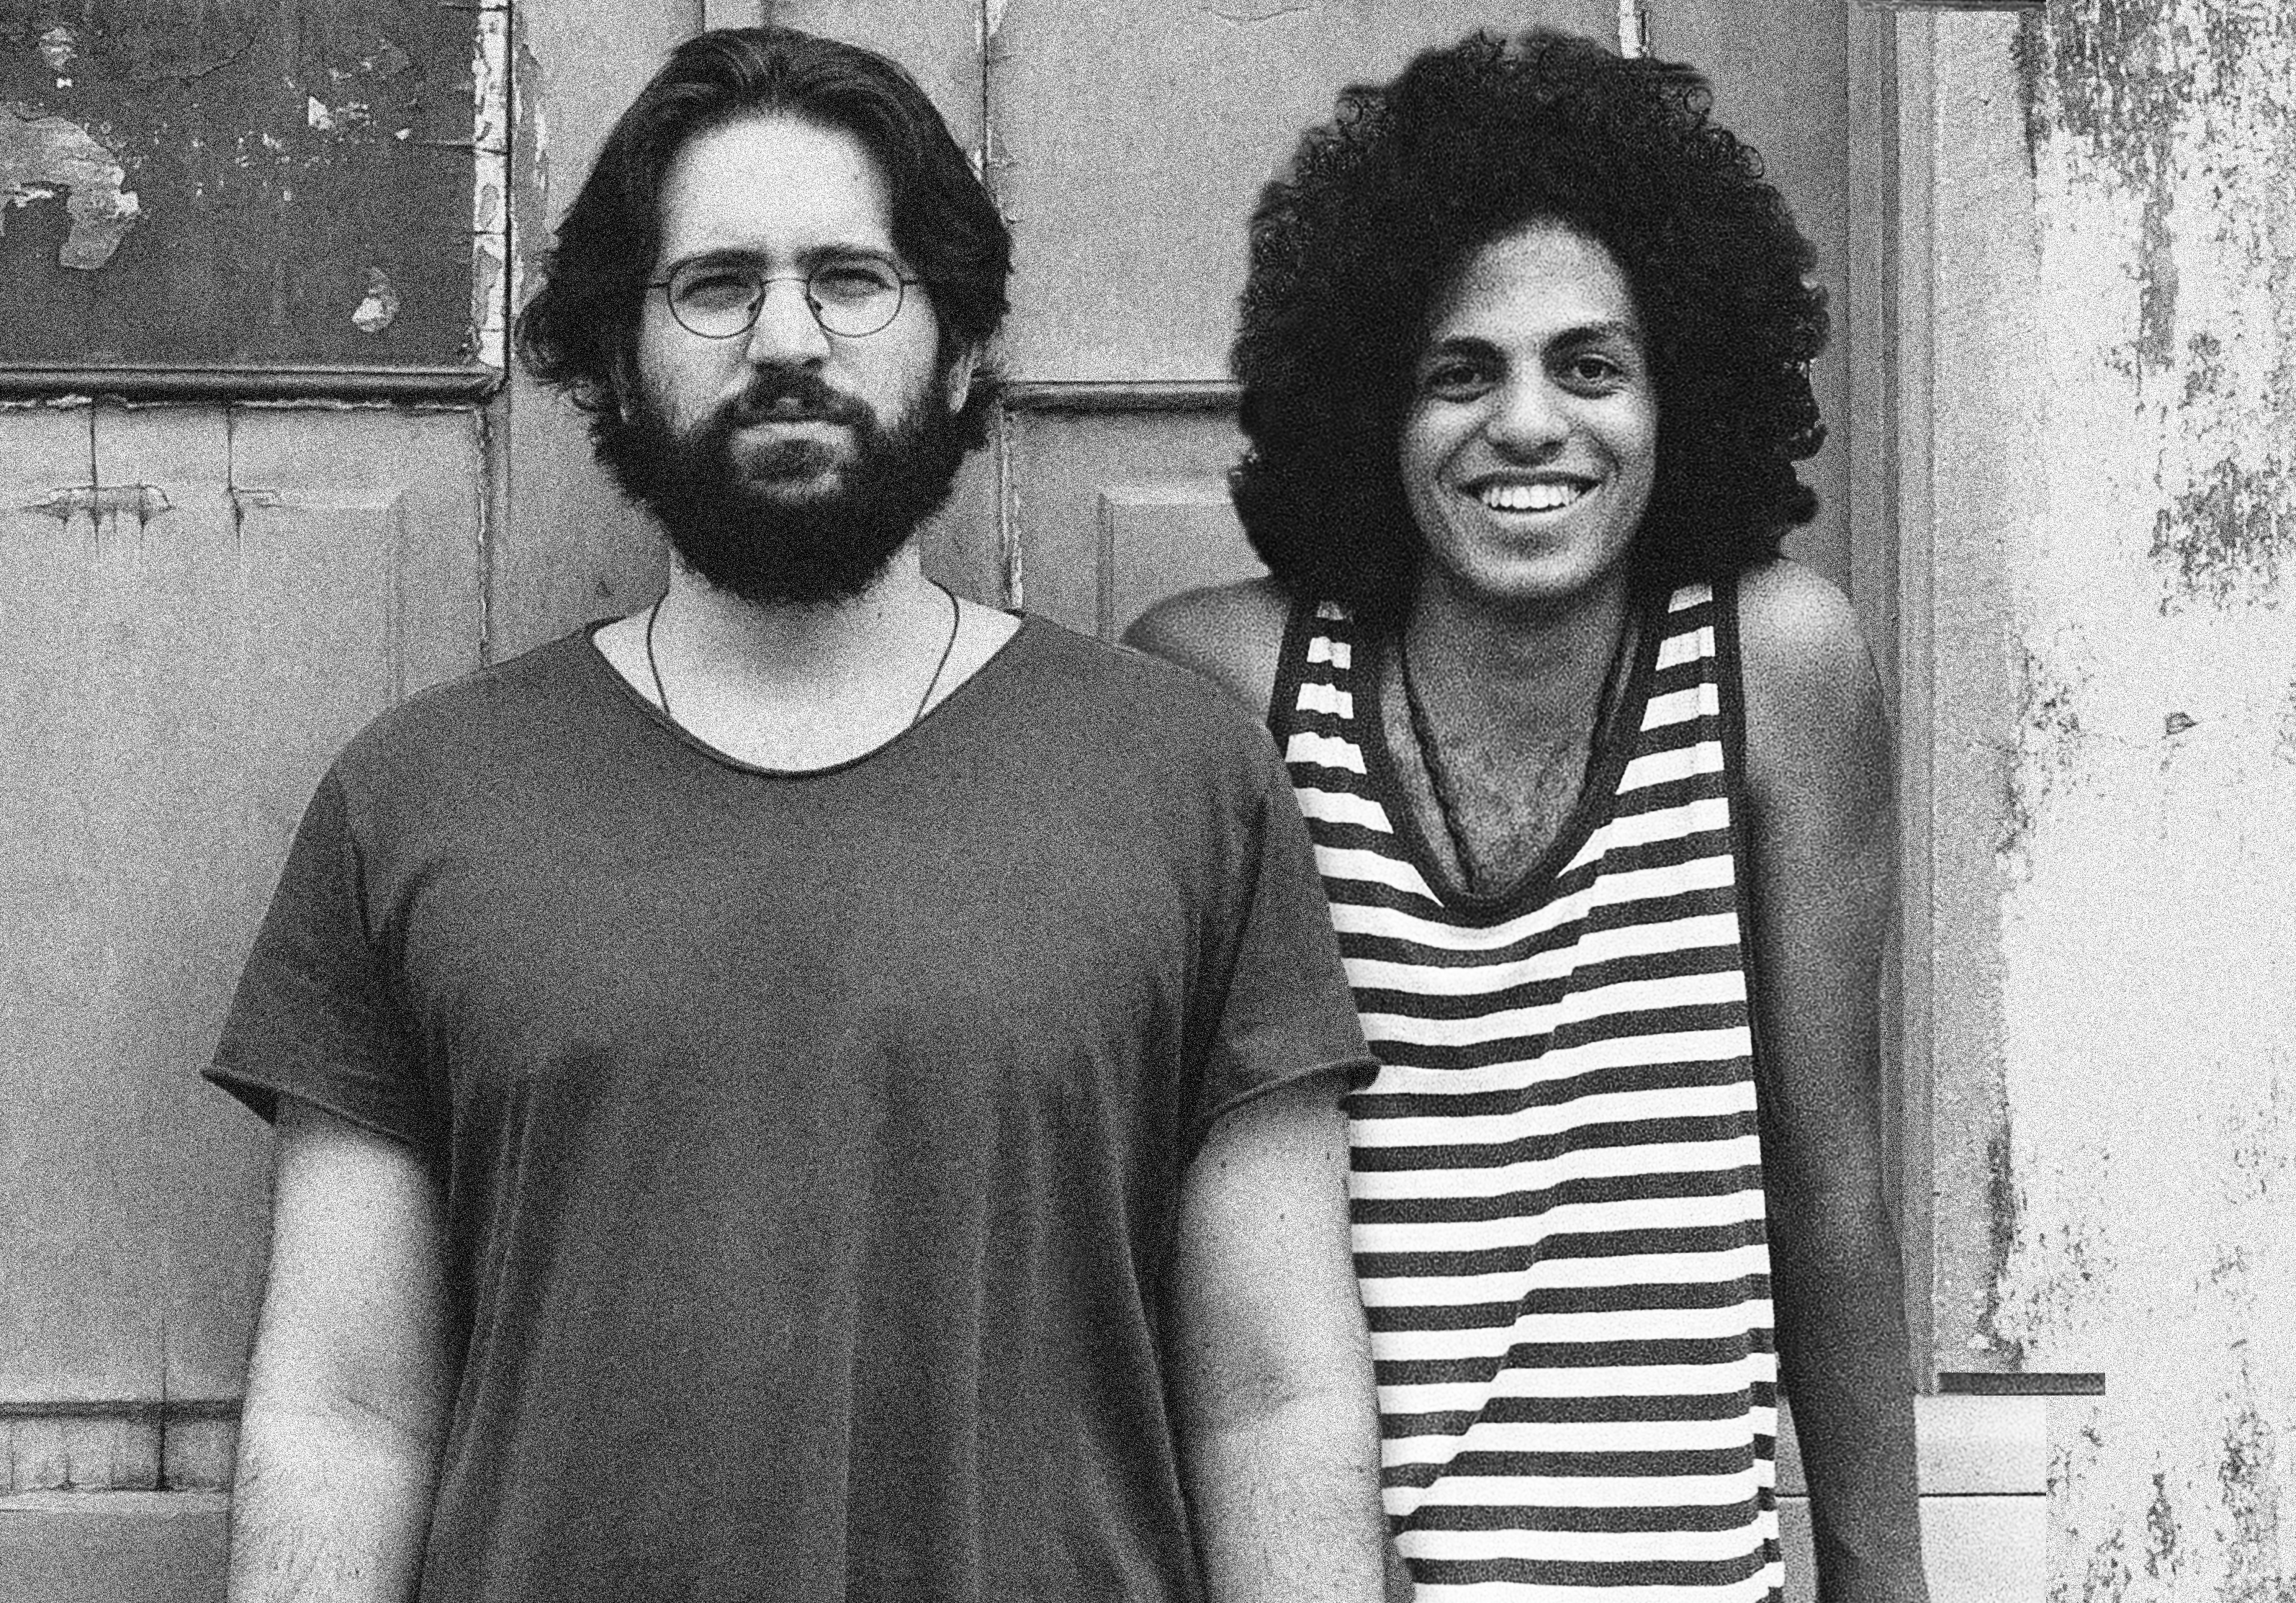 Leo Middea e Rodrigo Miguez lançam seus discos no Rio de Janeiro